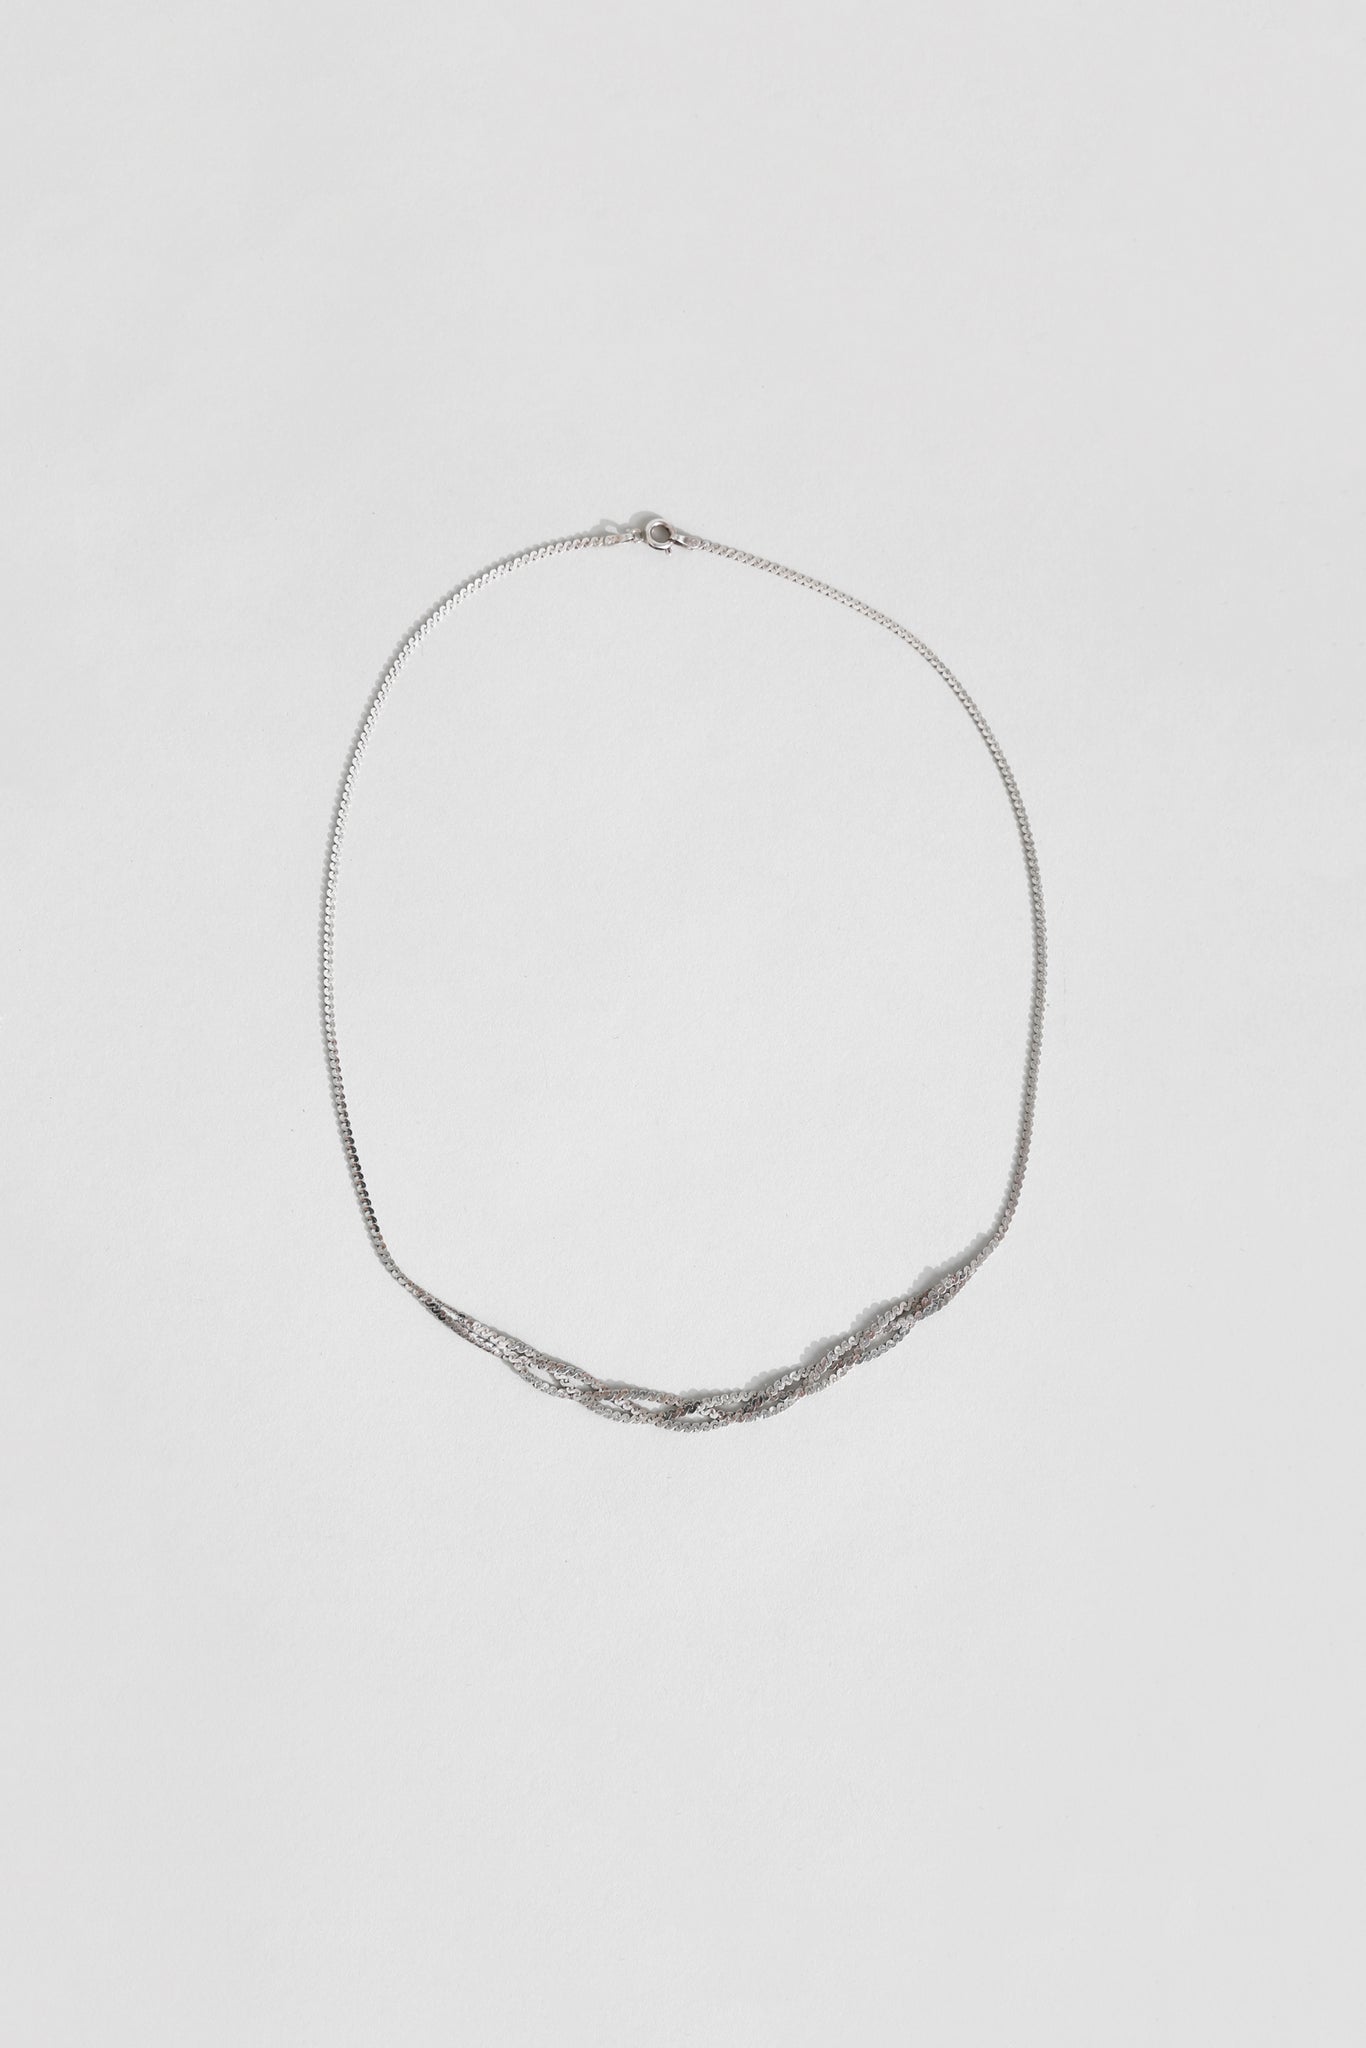 Braided Serpentine Necklace